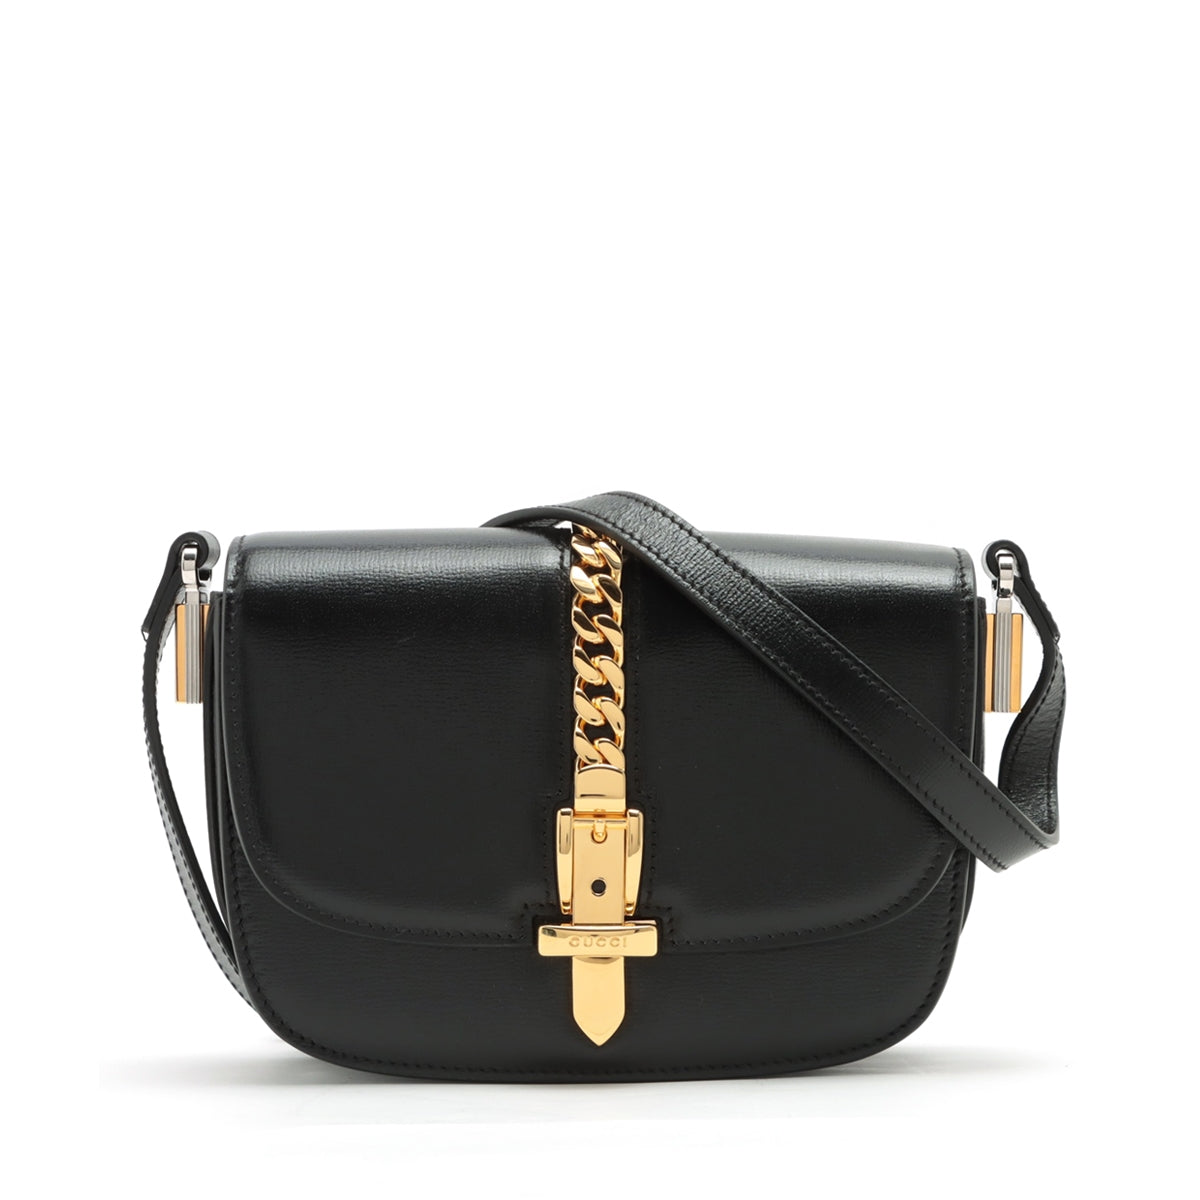 Gucci Sylvie 1969 Leather Shoulder bag Black 615965